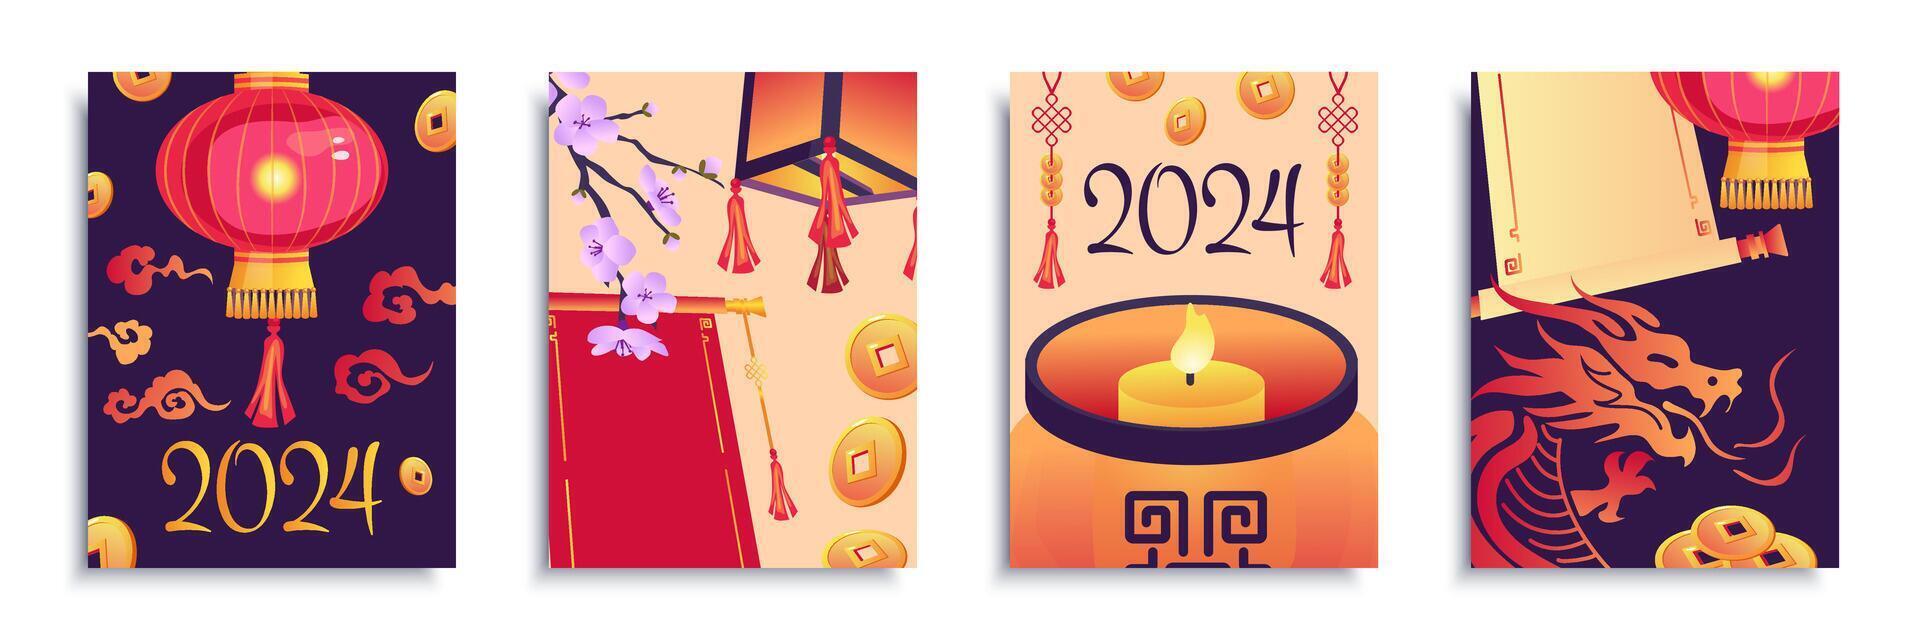 Chine Noël 2024 couverture brochure ensemble dans plat conception. affiche modèles avec chinois Nouveau année symboles, rouge lanternes, Sakura fleurs, d'or pièces de monnaie, bougies et zodiaque dragon. vecteur illustration.